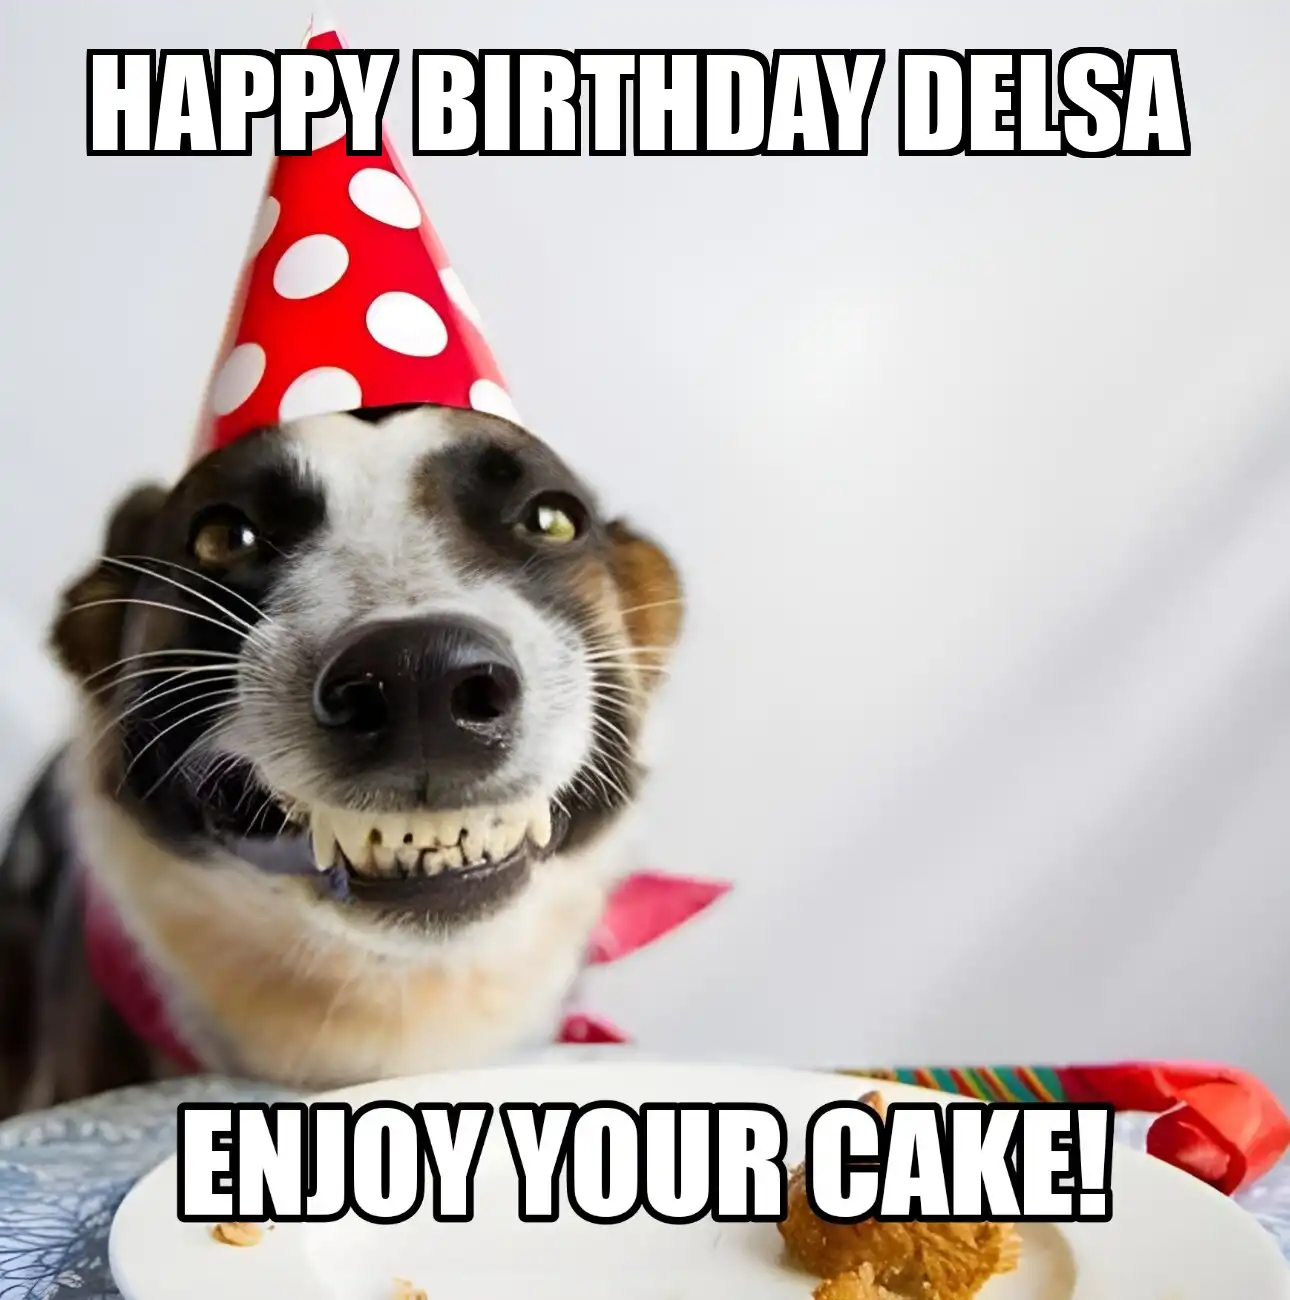 Happy Birthday Delsa Enjoy Your Cake Dog Meme